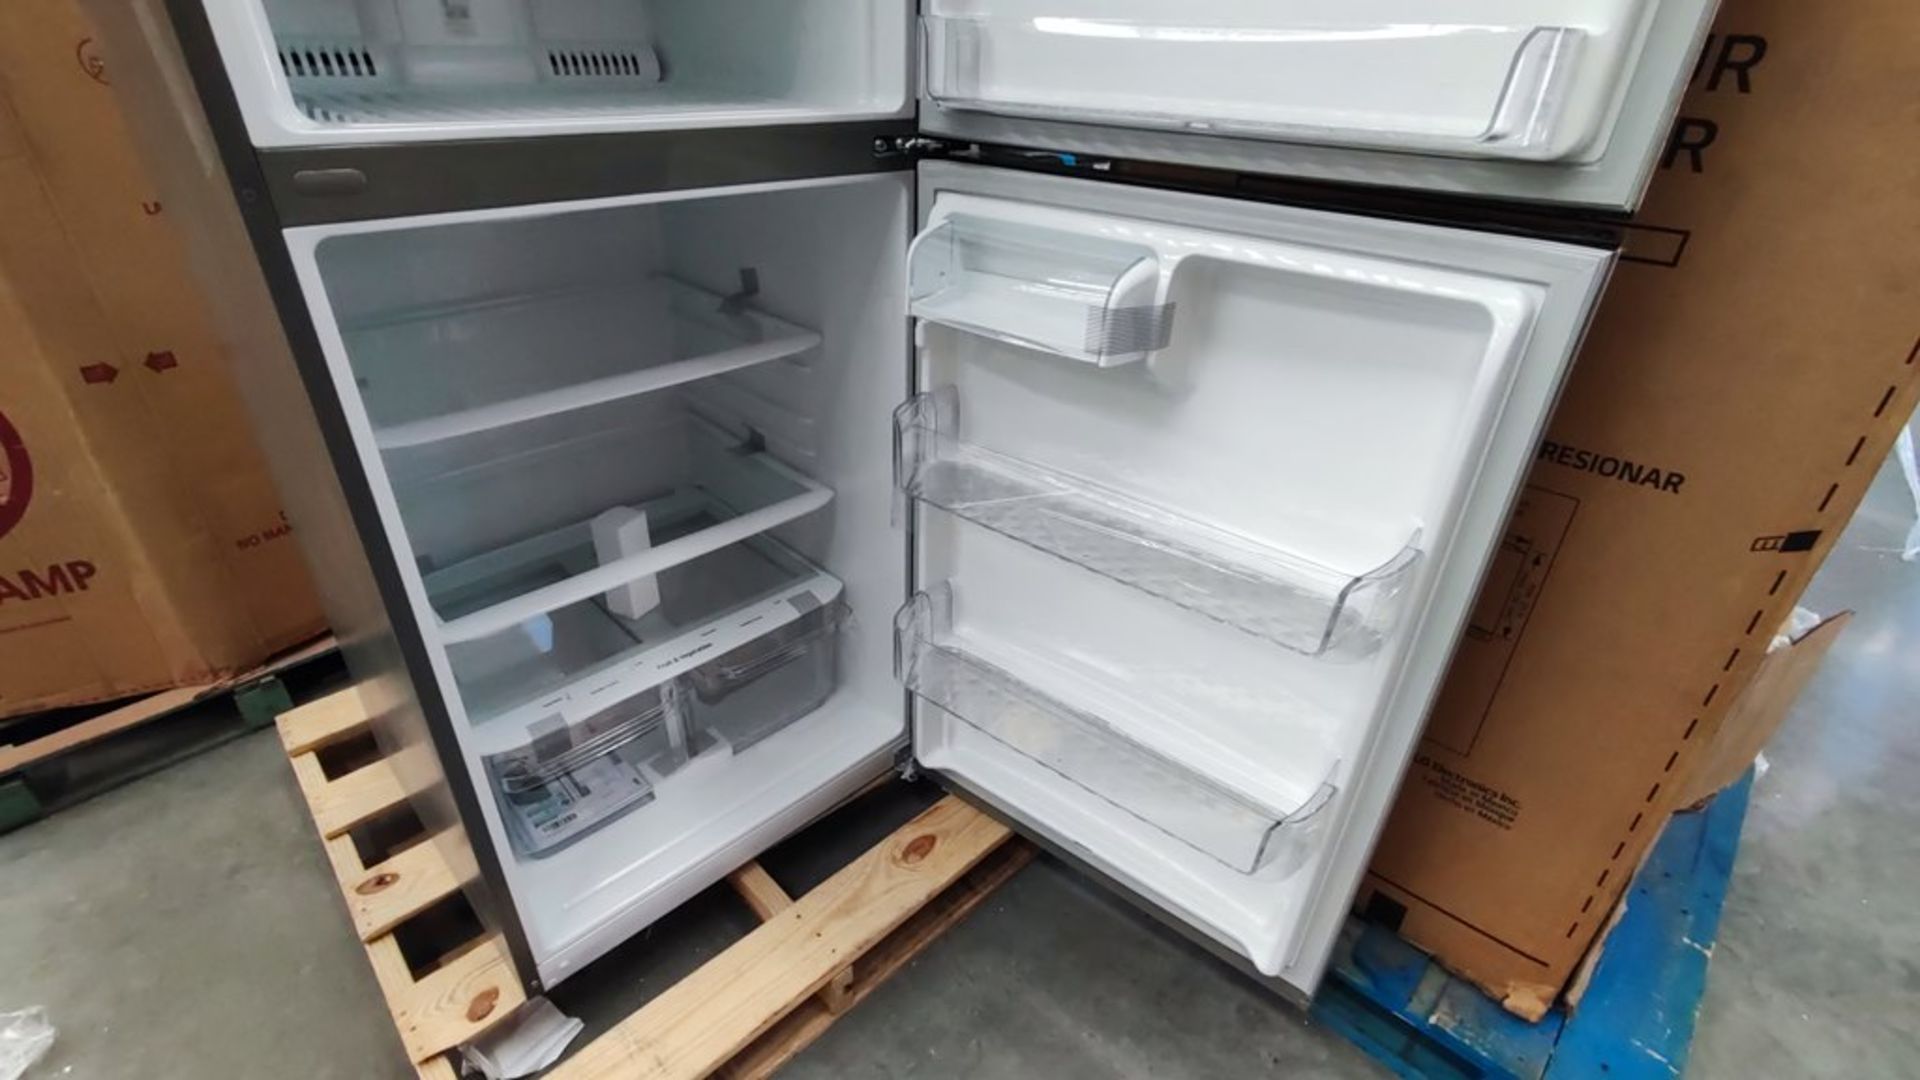 1 Refrigerador Marca LG, Modelo LT57BPSX, Serie 111MRVY3TY614, Color Gris, Favor de inspeccionar. ( - Image 10 of 11